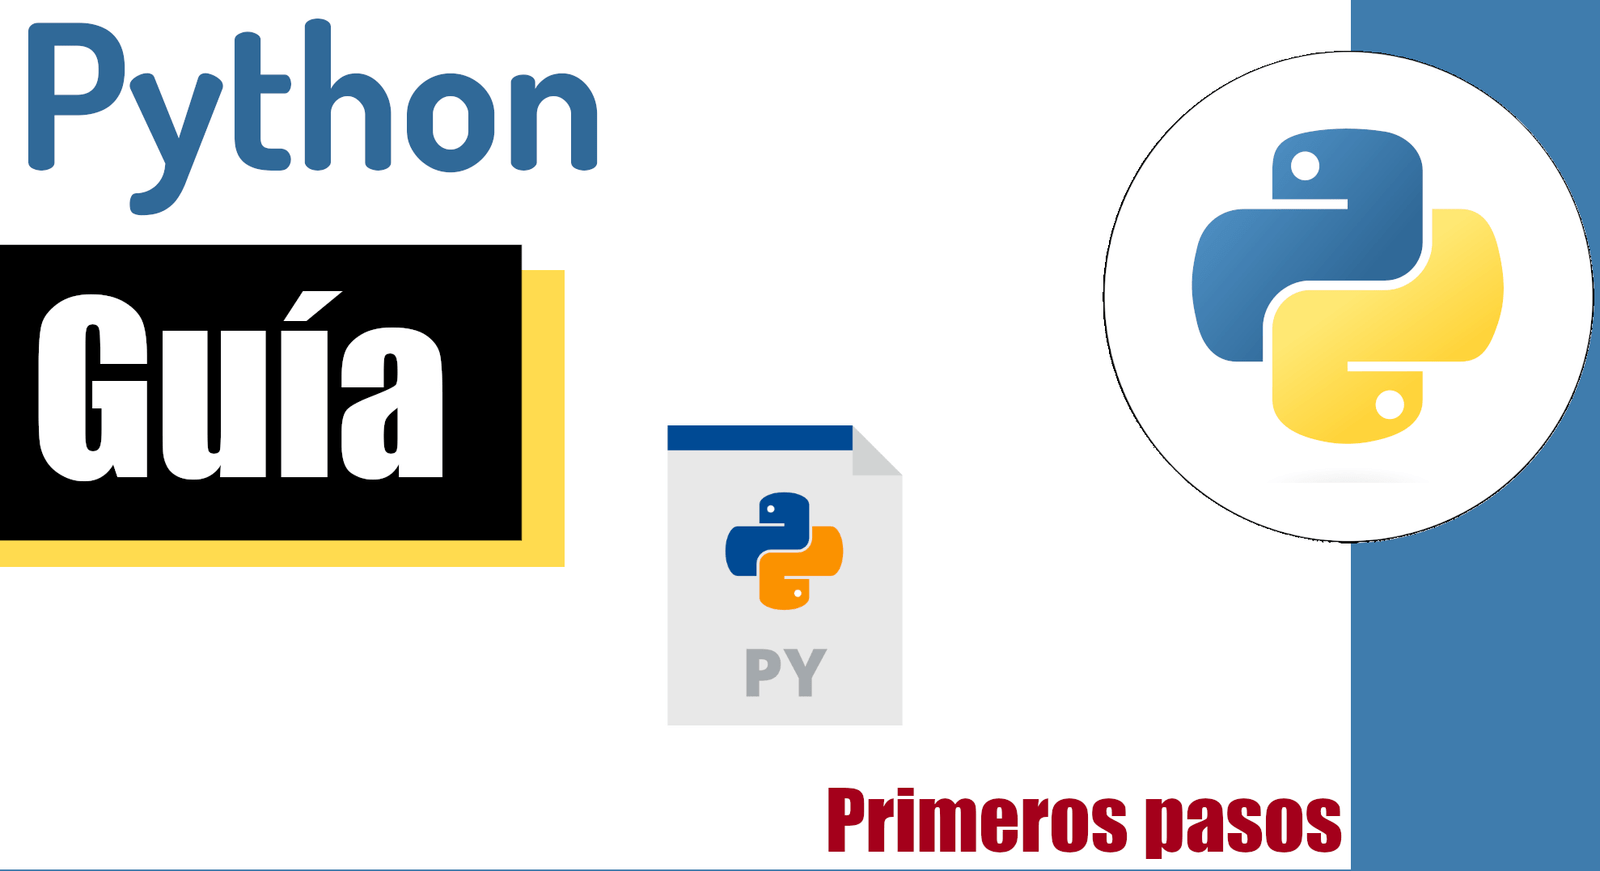 Todo lo que necesitas saber para iniciar en Python